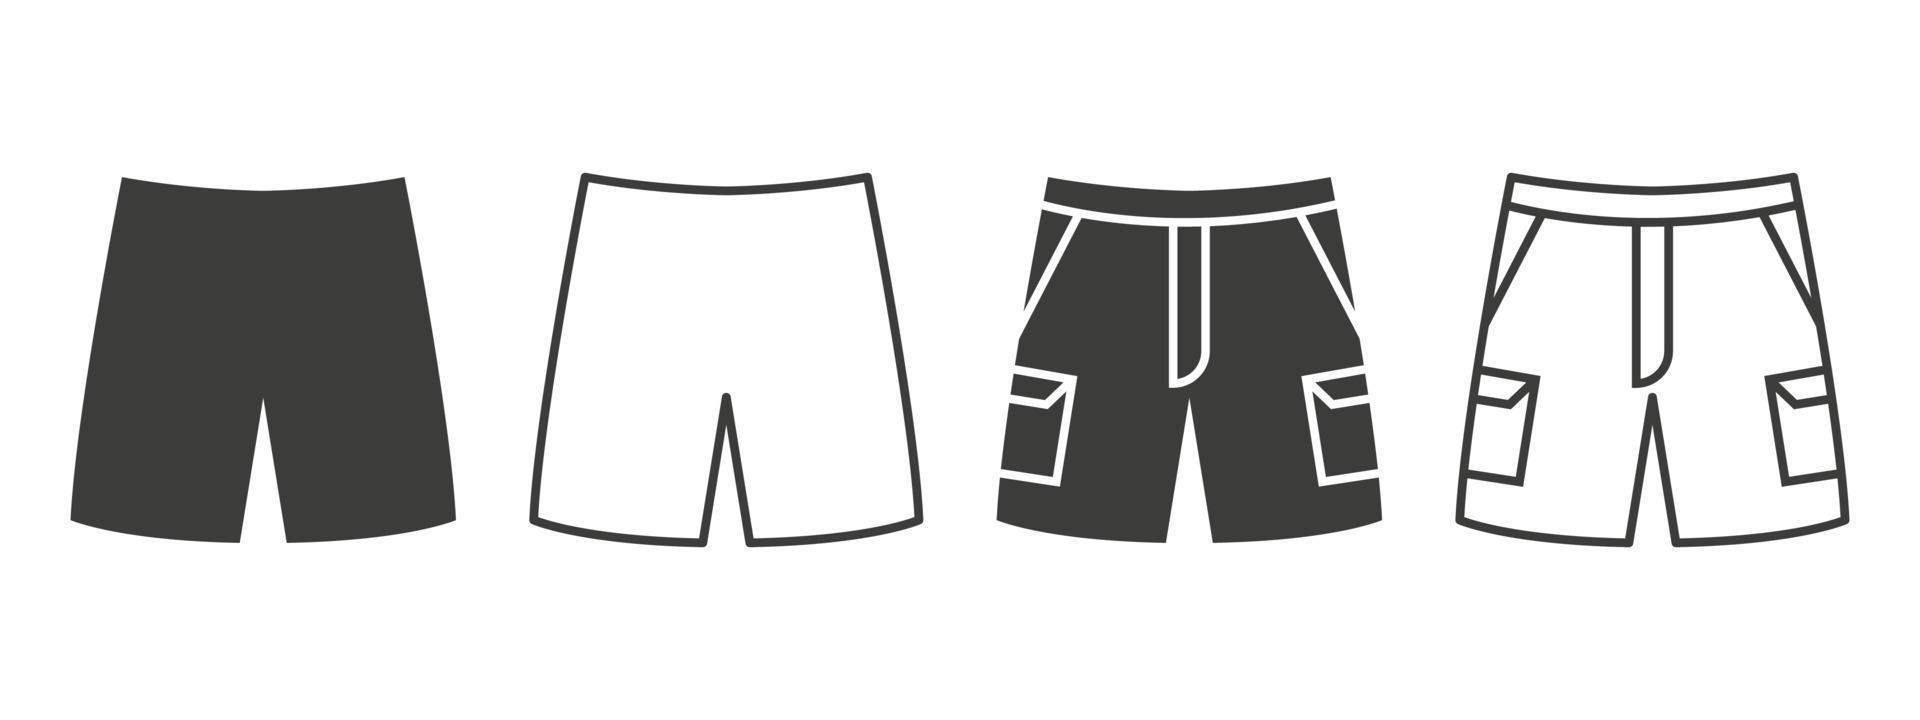 ícones de shorts. shorts com bolsos de diferentes estilos. conceito de símbolo de roupas. ilustração vetorial vetor